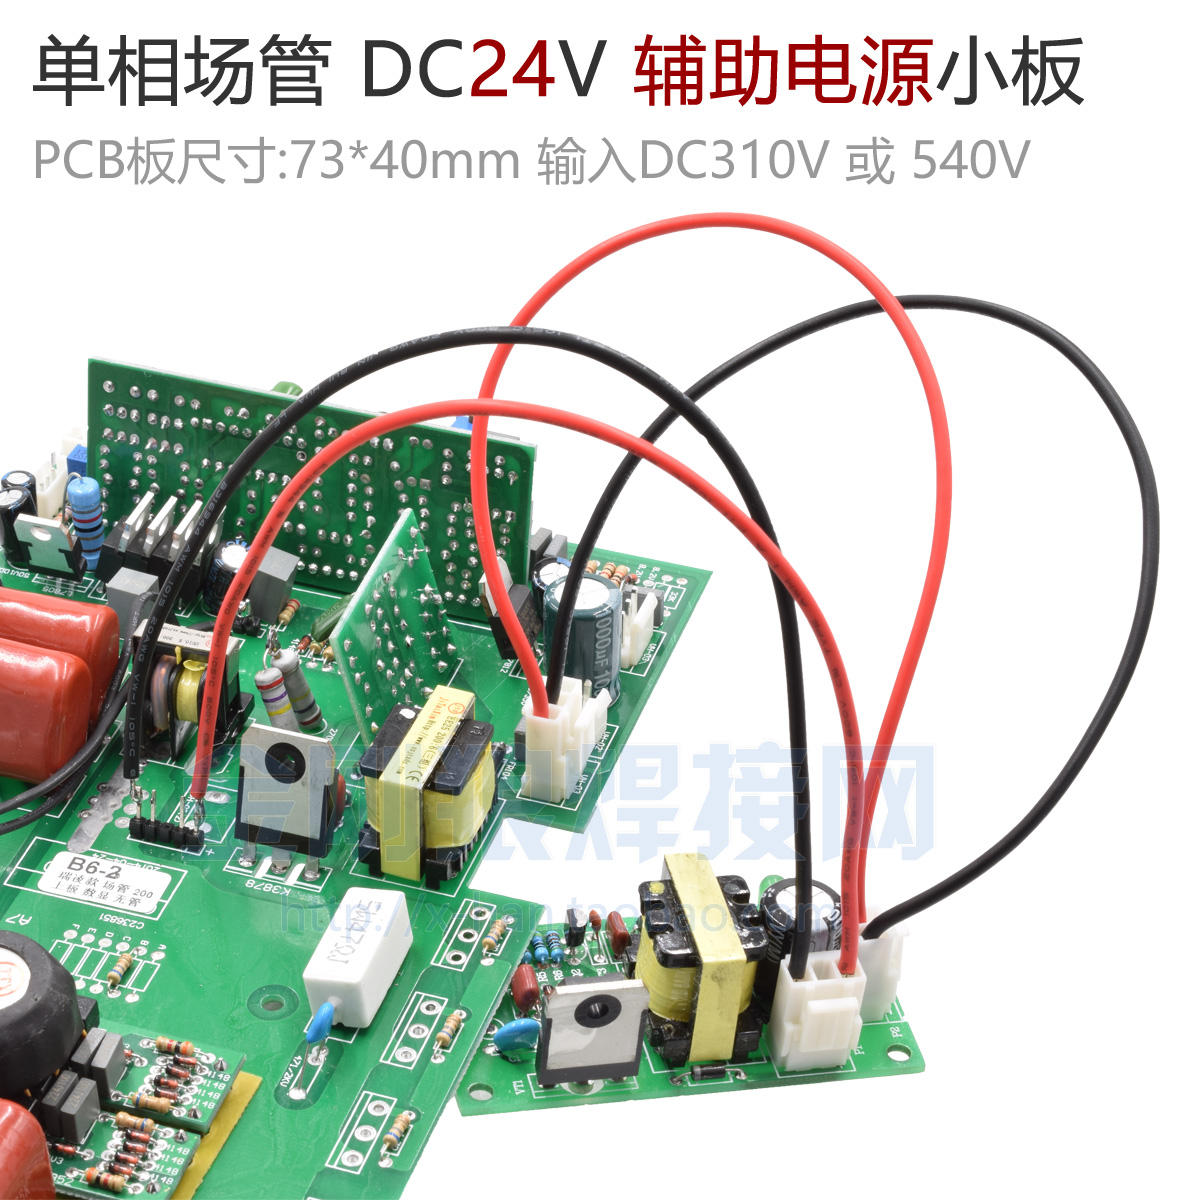 场管mos 逆变焊机 dc24v 辅助电源 维修替换模块 开关电源 辅电